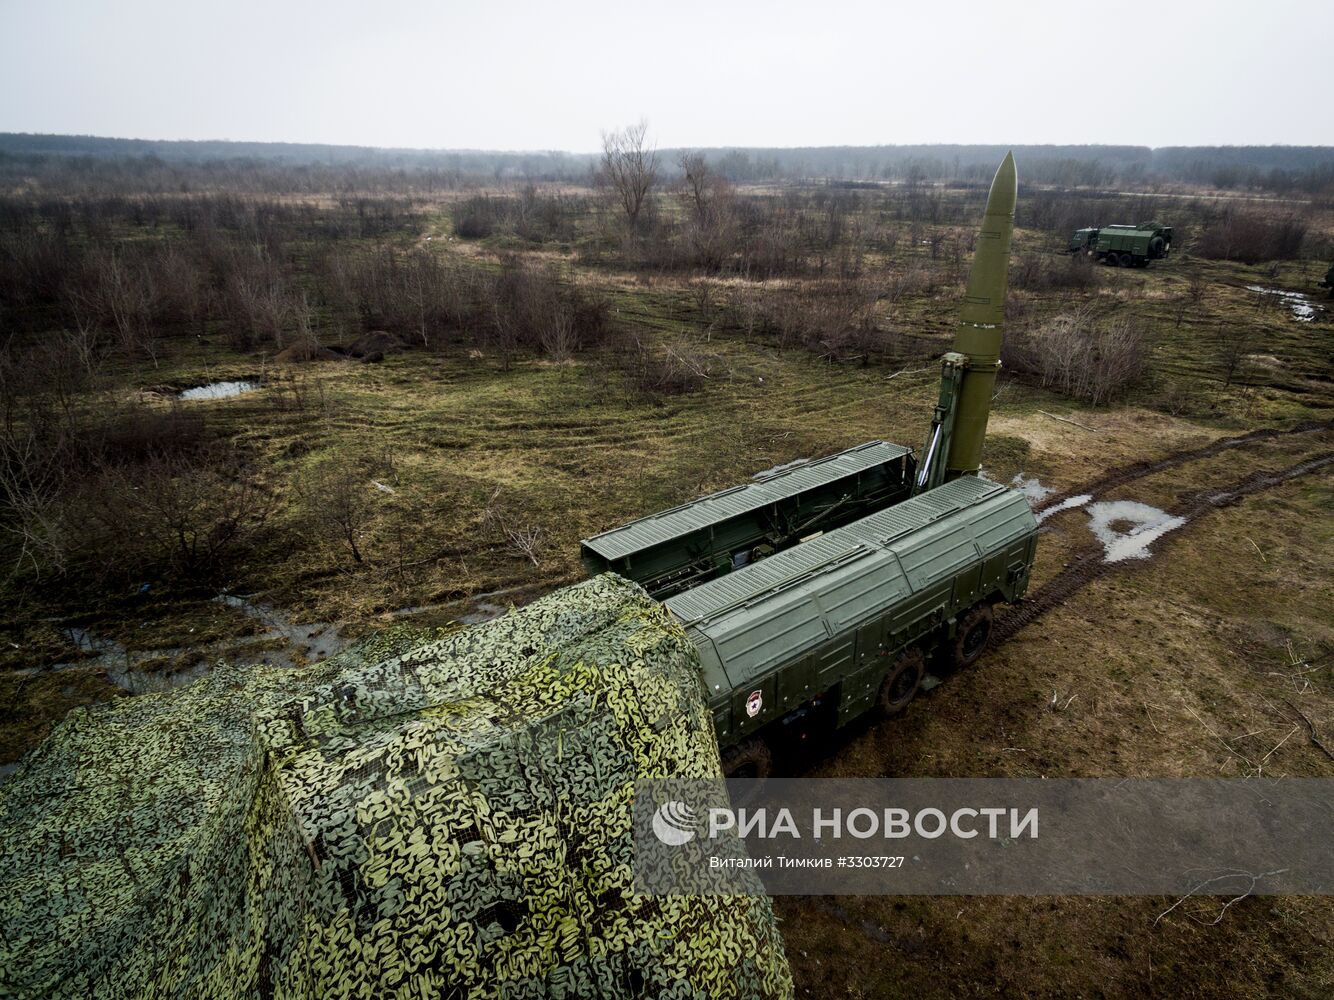 Учения расчетов ракетного комплекса "Искандер-М" в Краснодарском крае